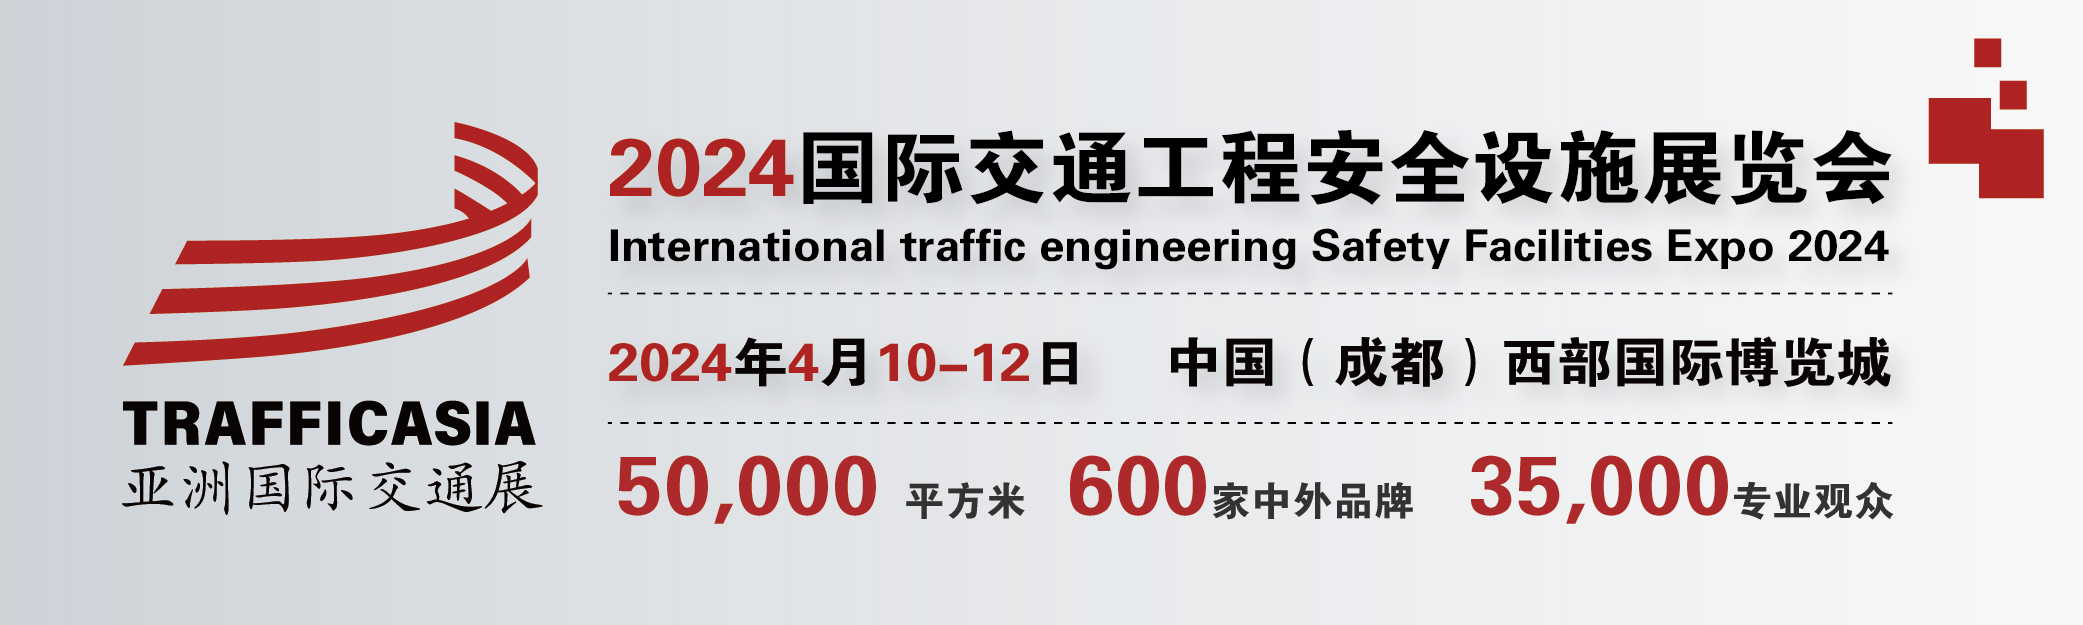 2024中国(成都)国际交通工程安全设施展览会